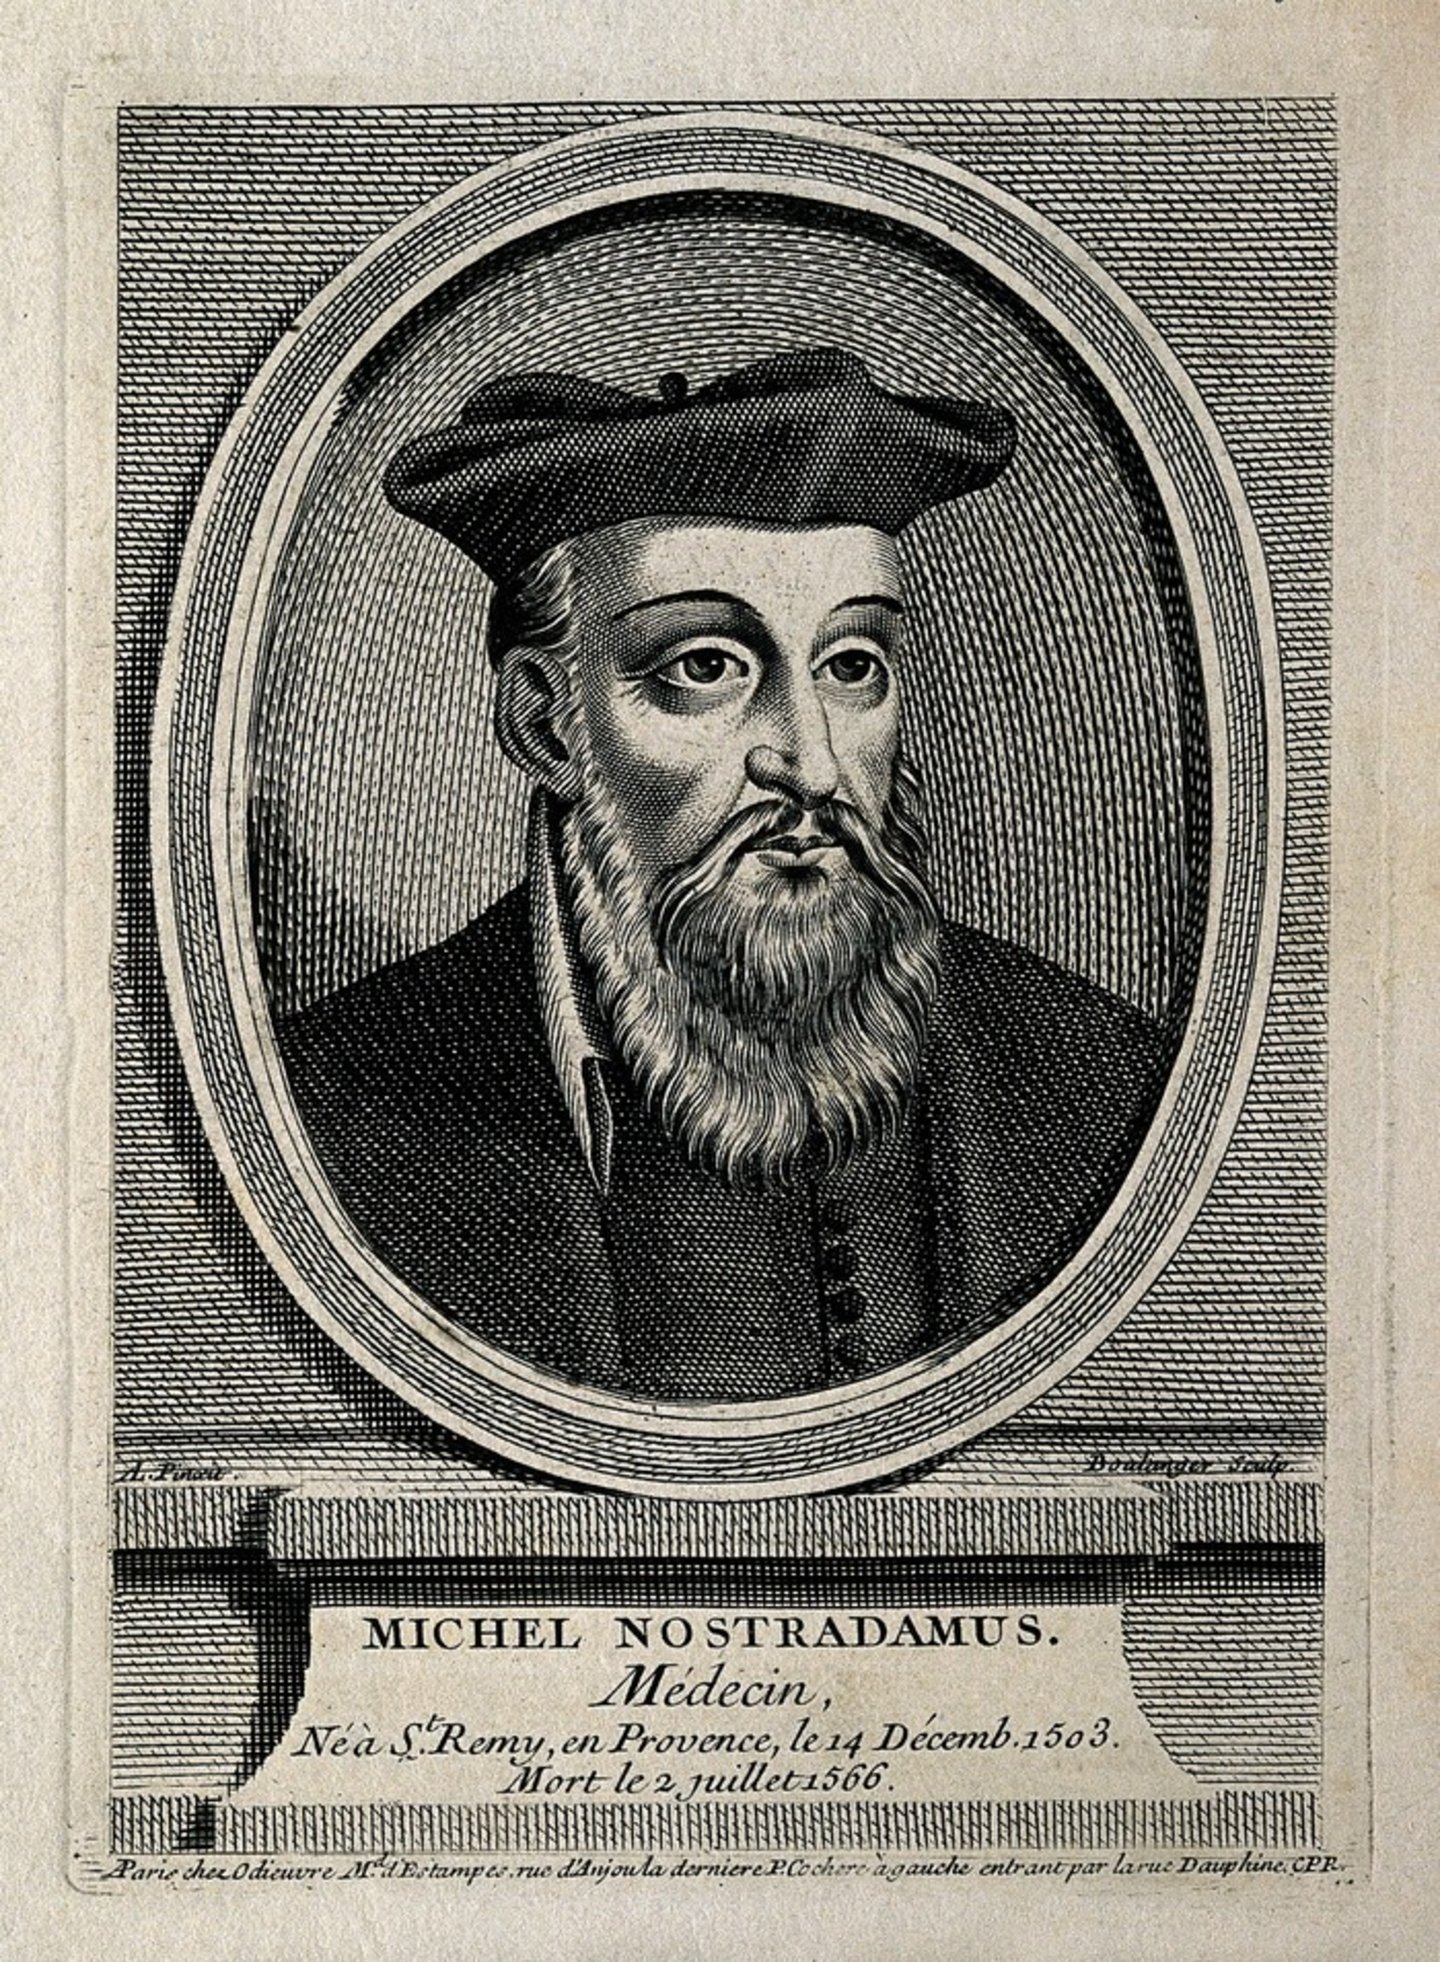 Michael Nostradamus